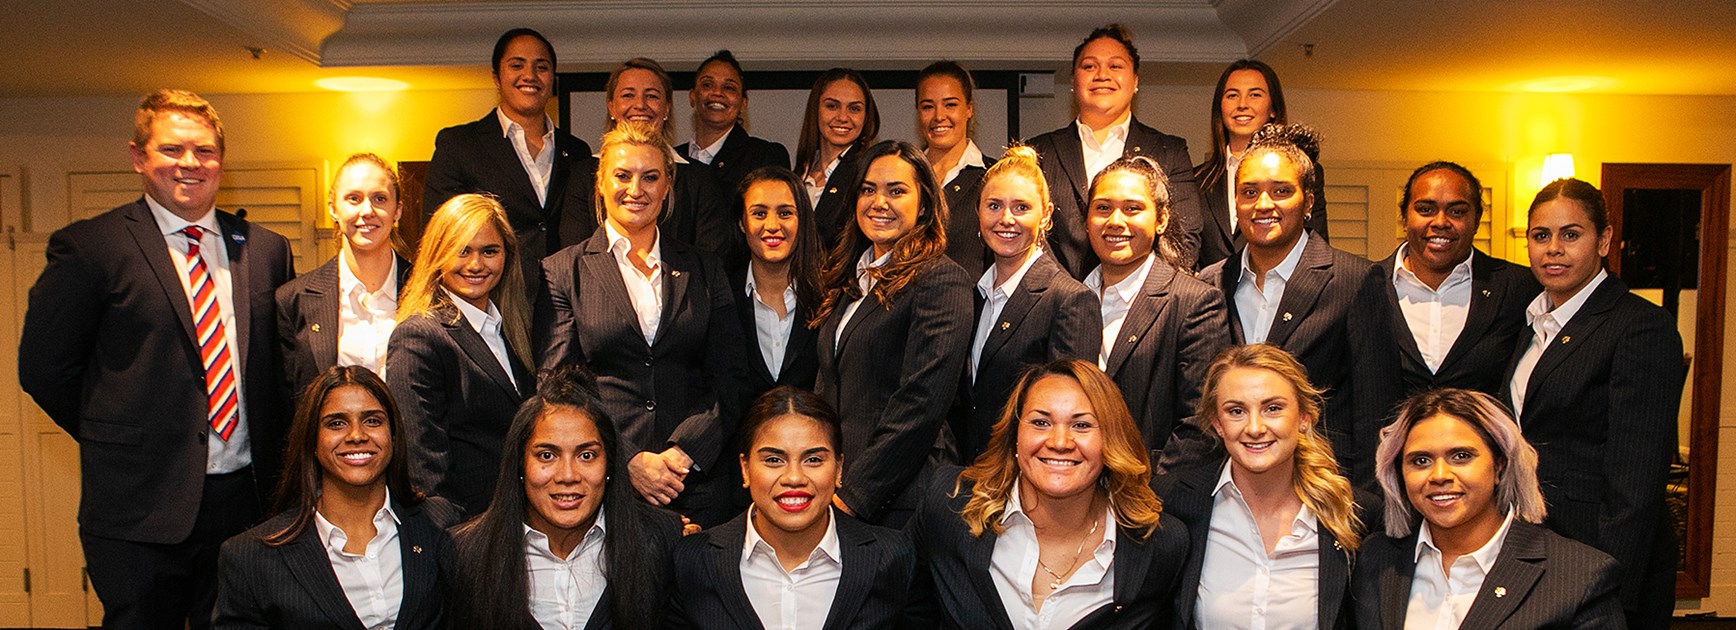 Sydney Roosters Women's Season Launch